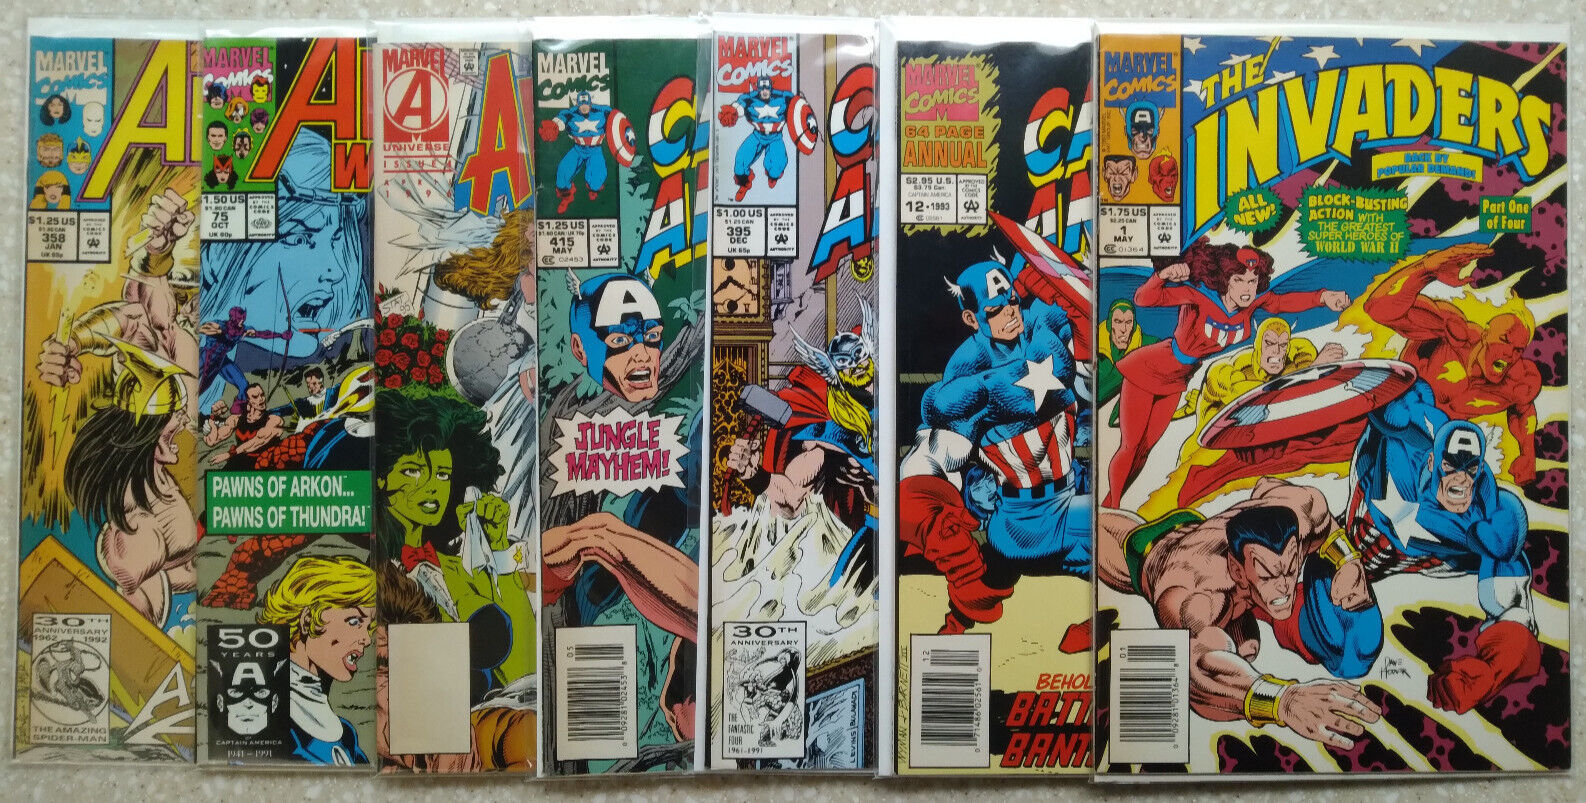 Avengers/Captain America 7-Issue Comic Lot - Marvel 1991-1996